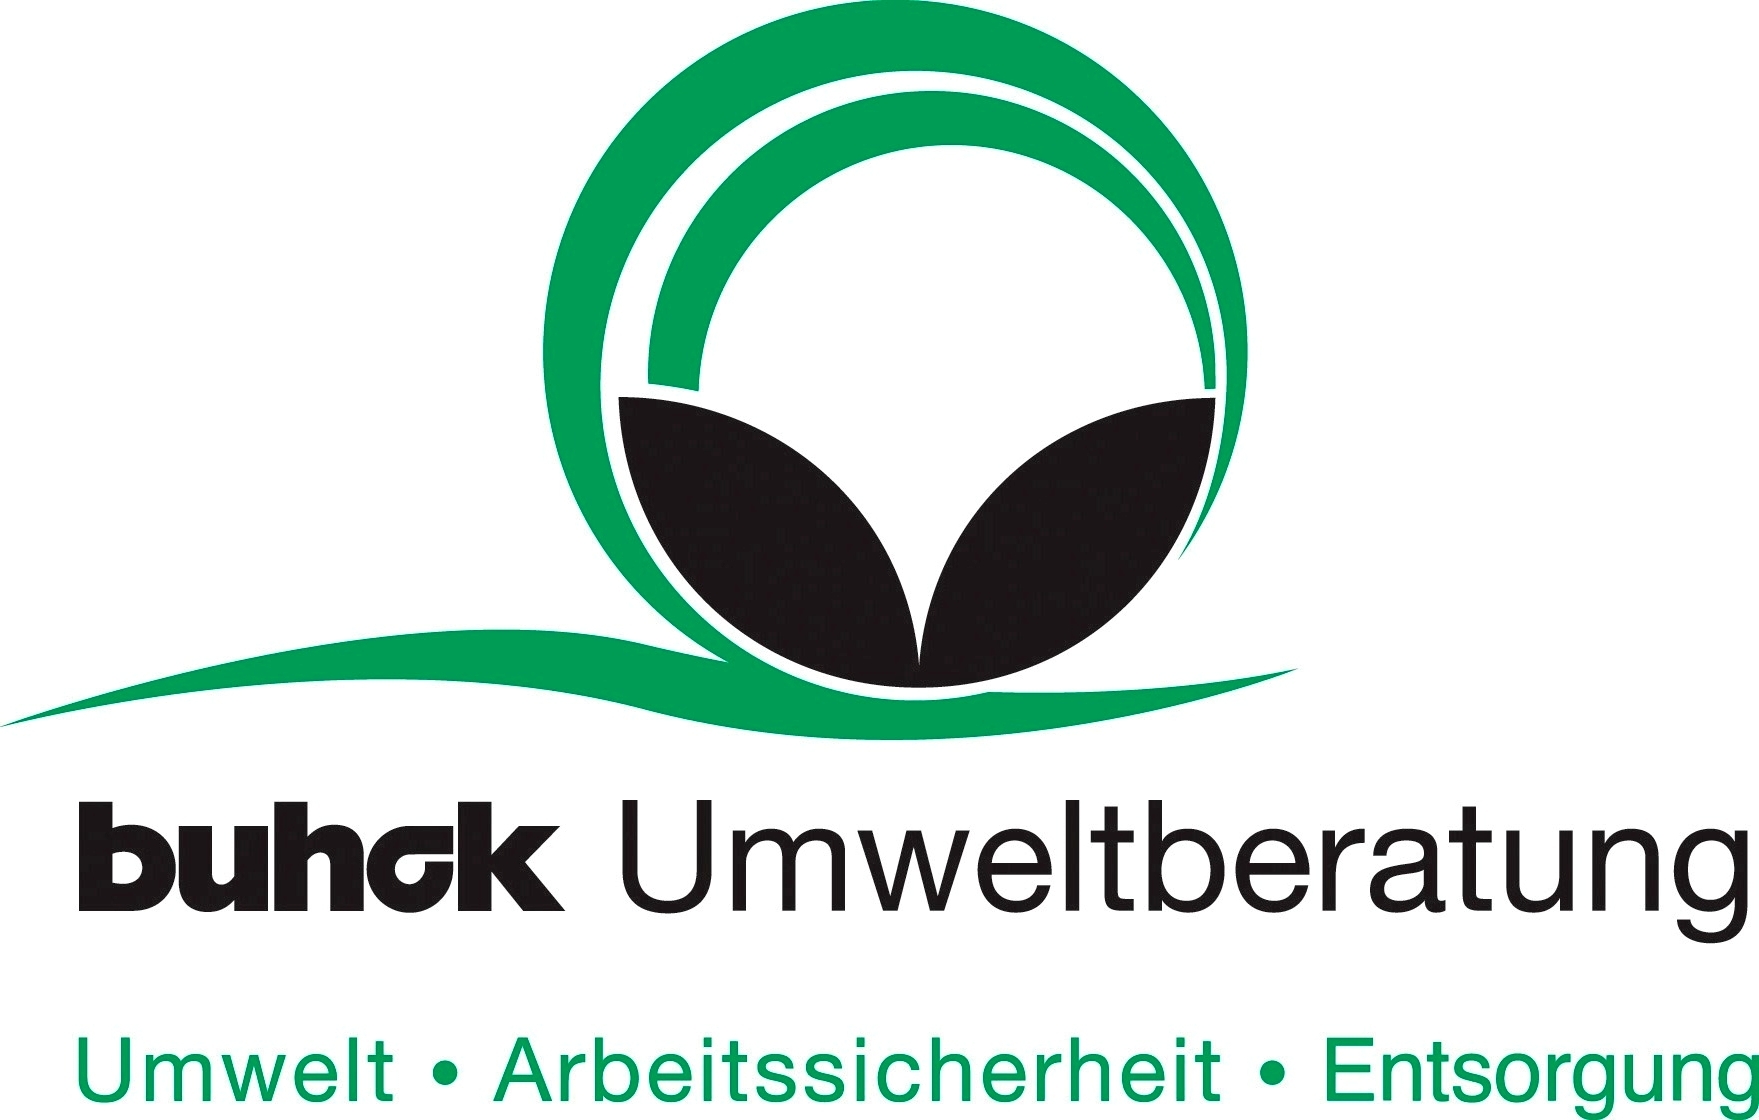 Bild 1 Buhck Umweltservices GmbH & Co. KG in Wentorf bei Hamburg